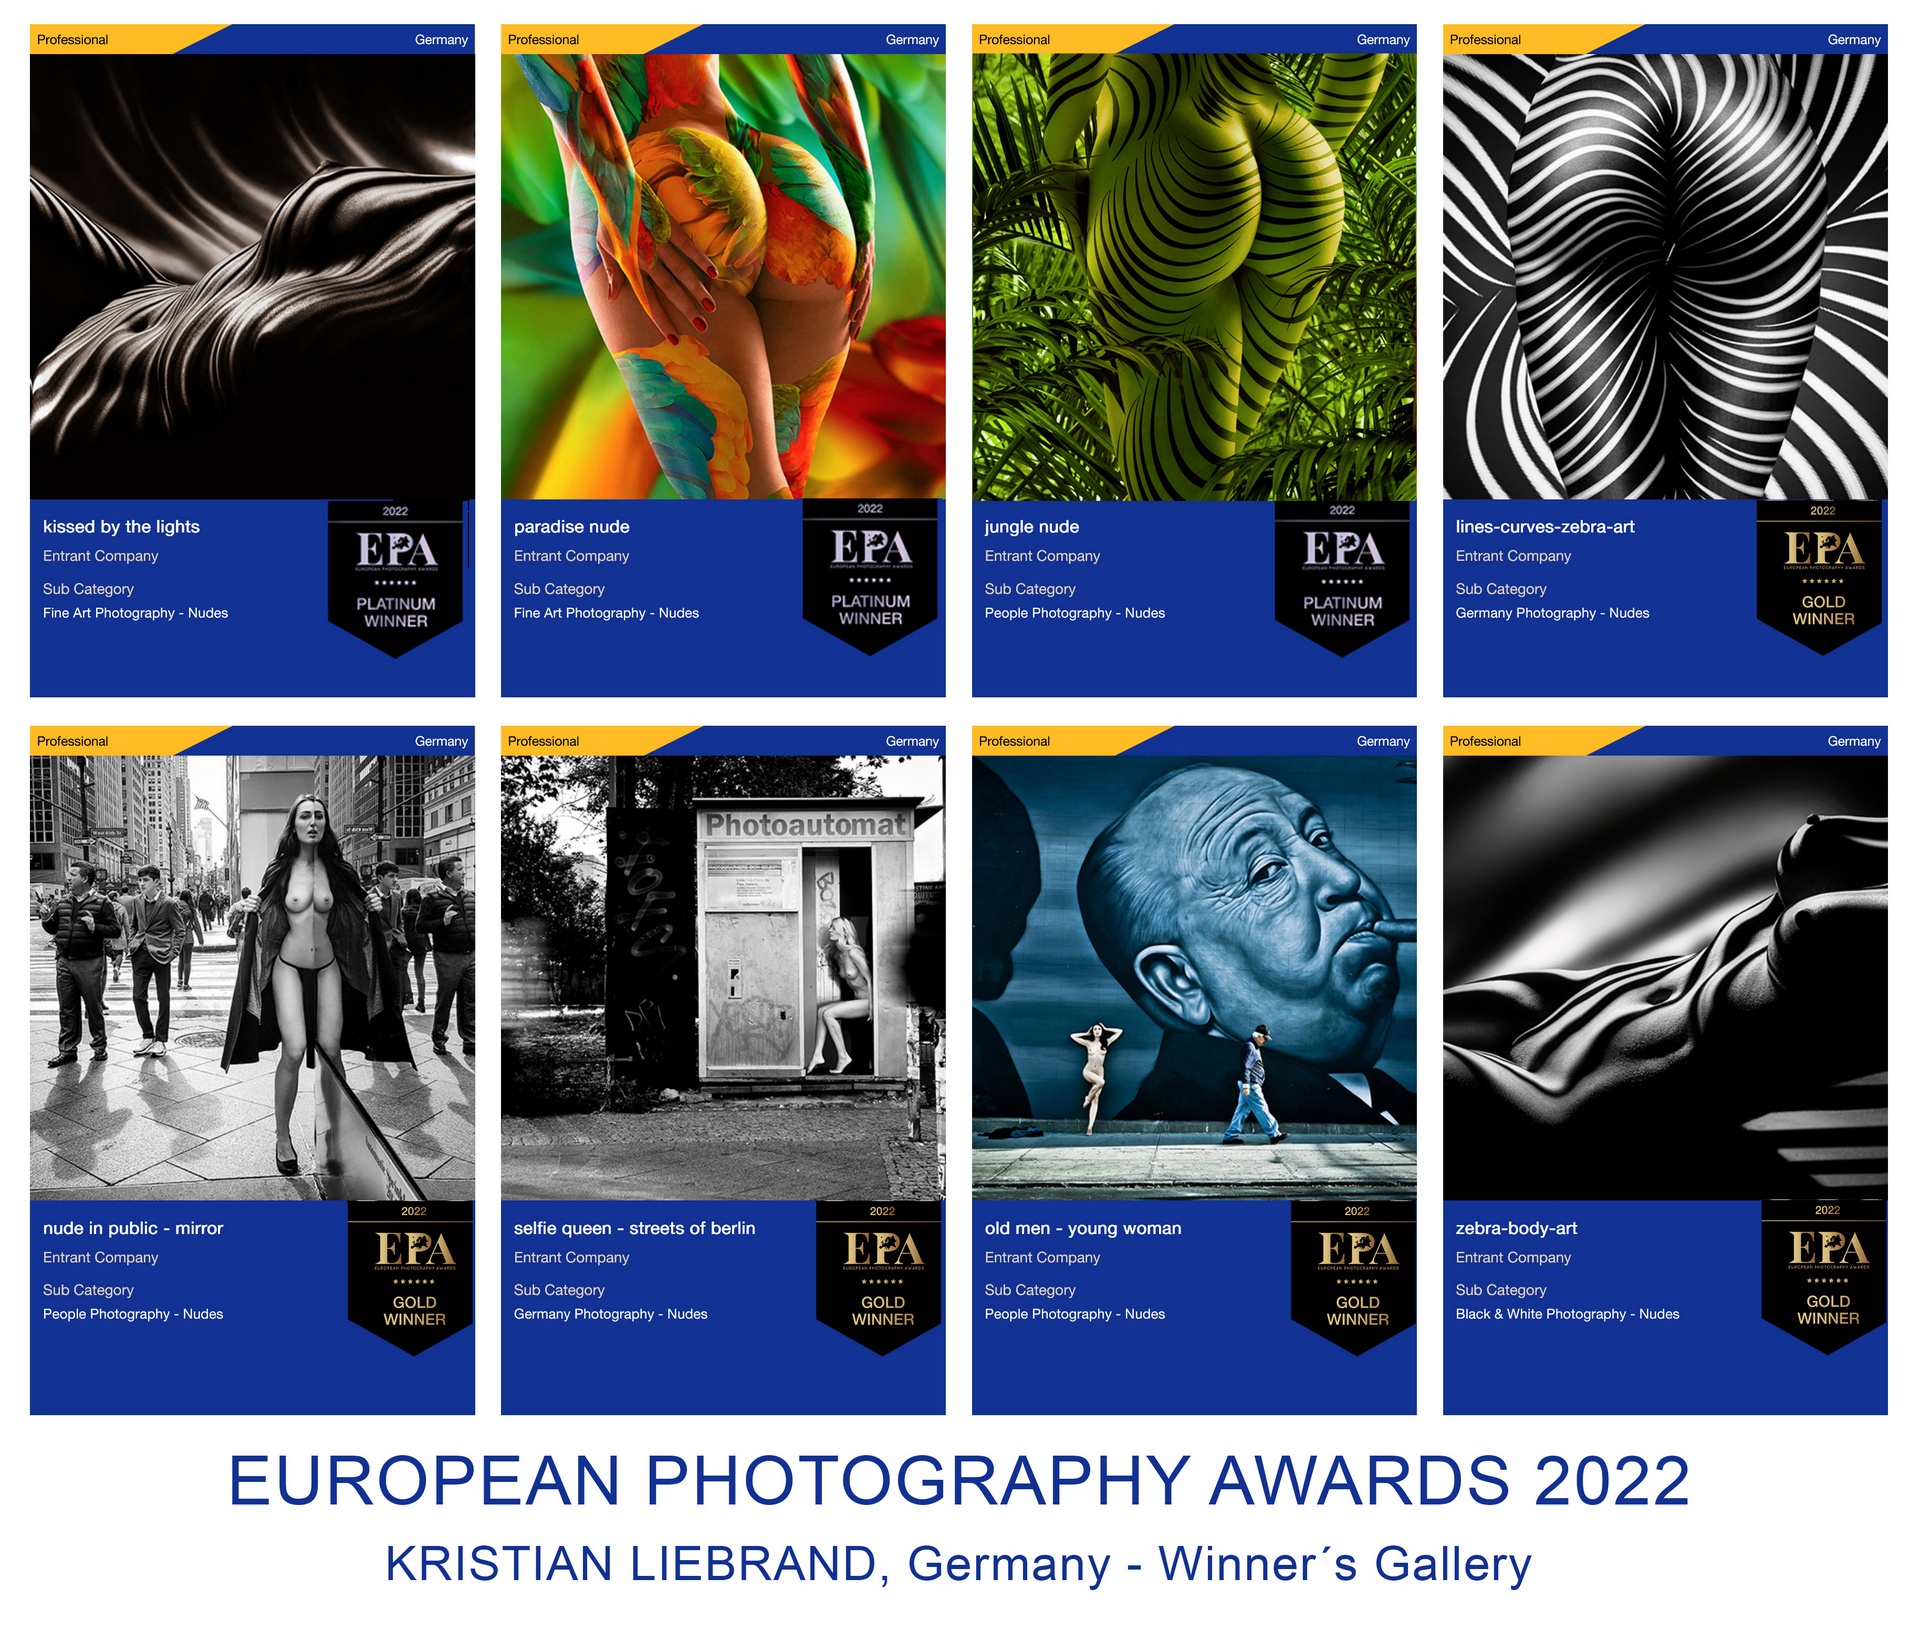 Internationale Auszeichnungen / Awards für Aktfotografie